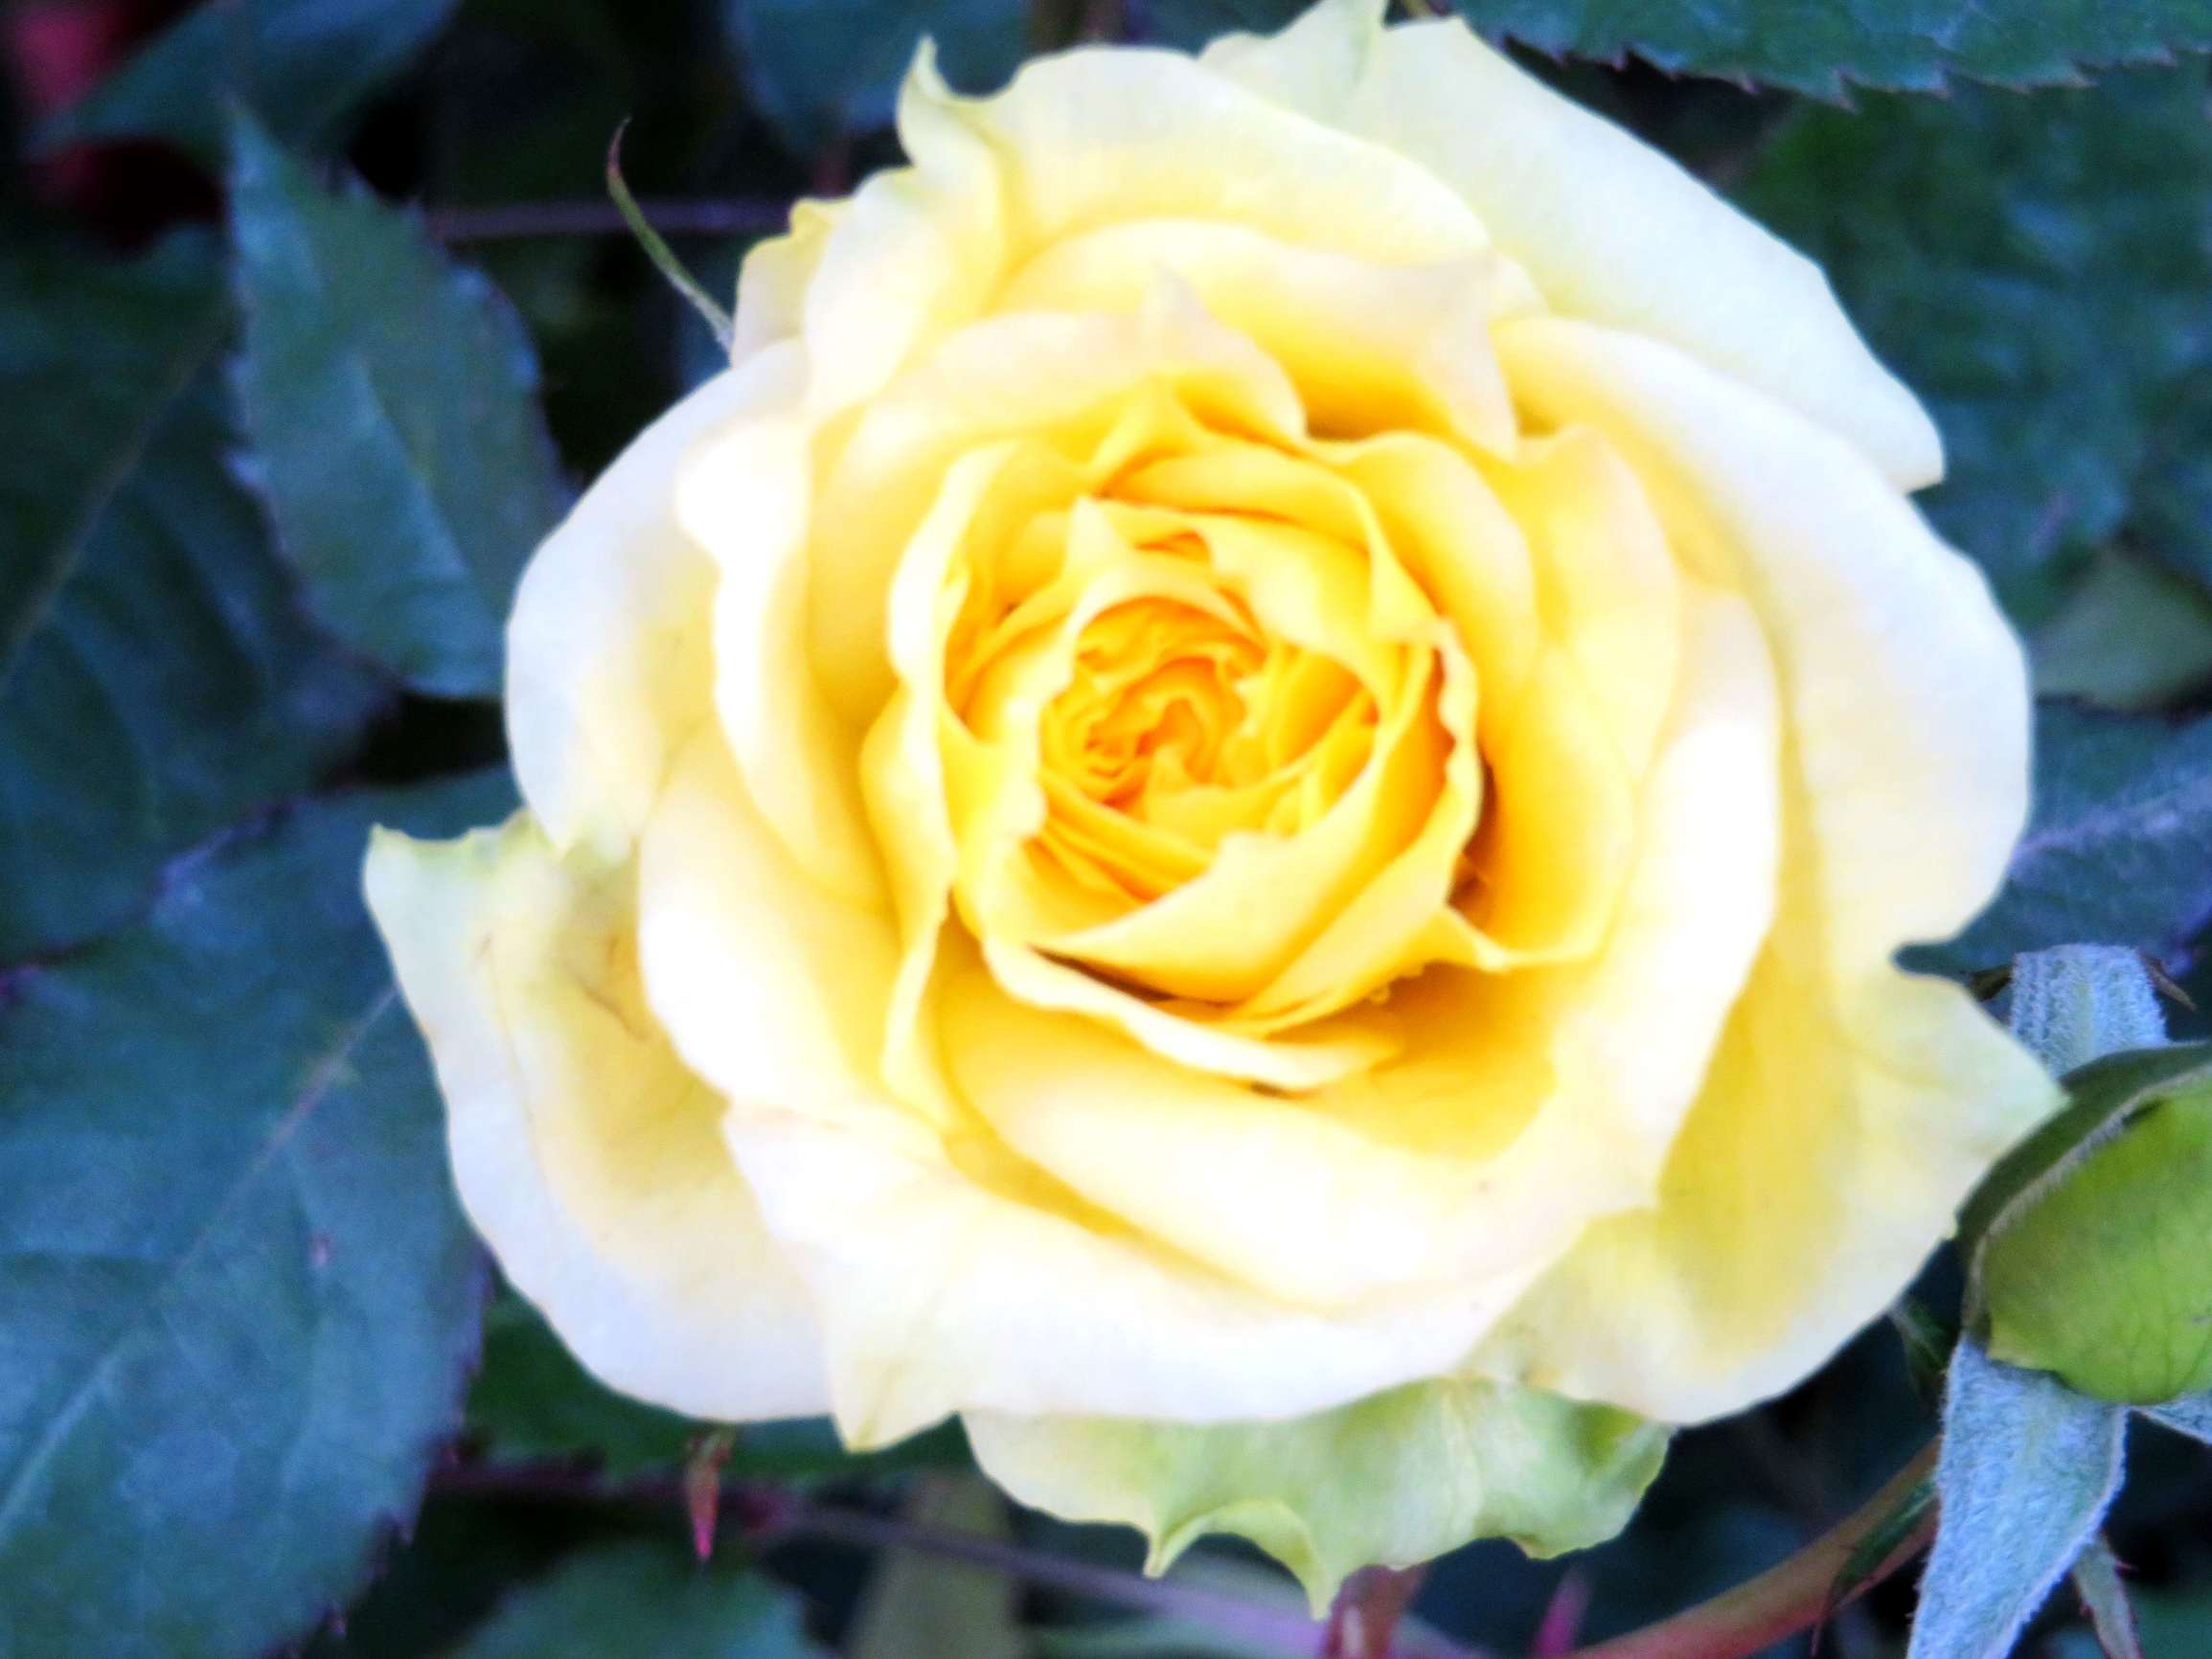 黄玫瑰代表热情真爱,还代表为爱道歉重祝福,不贞,嫉妒,失恋,道歉